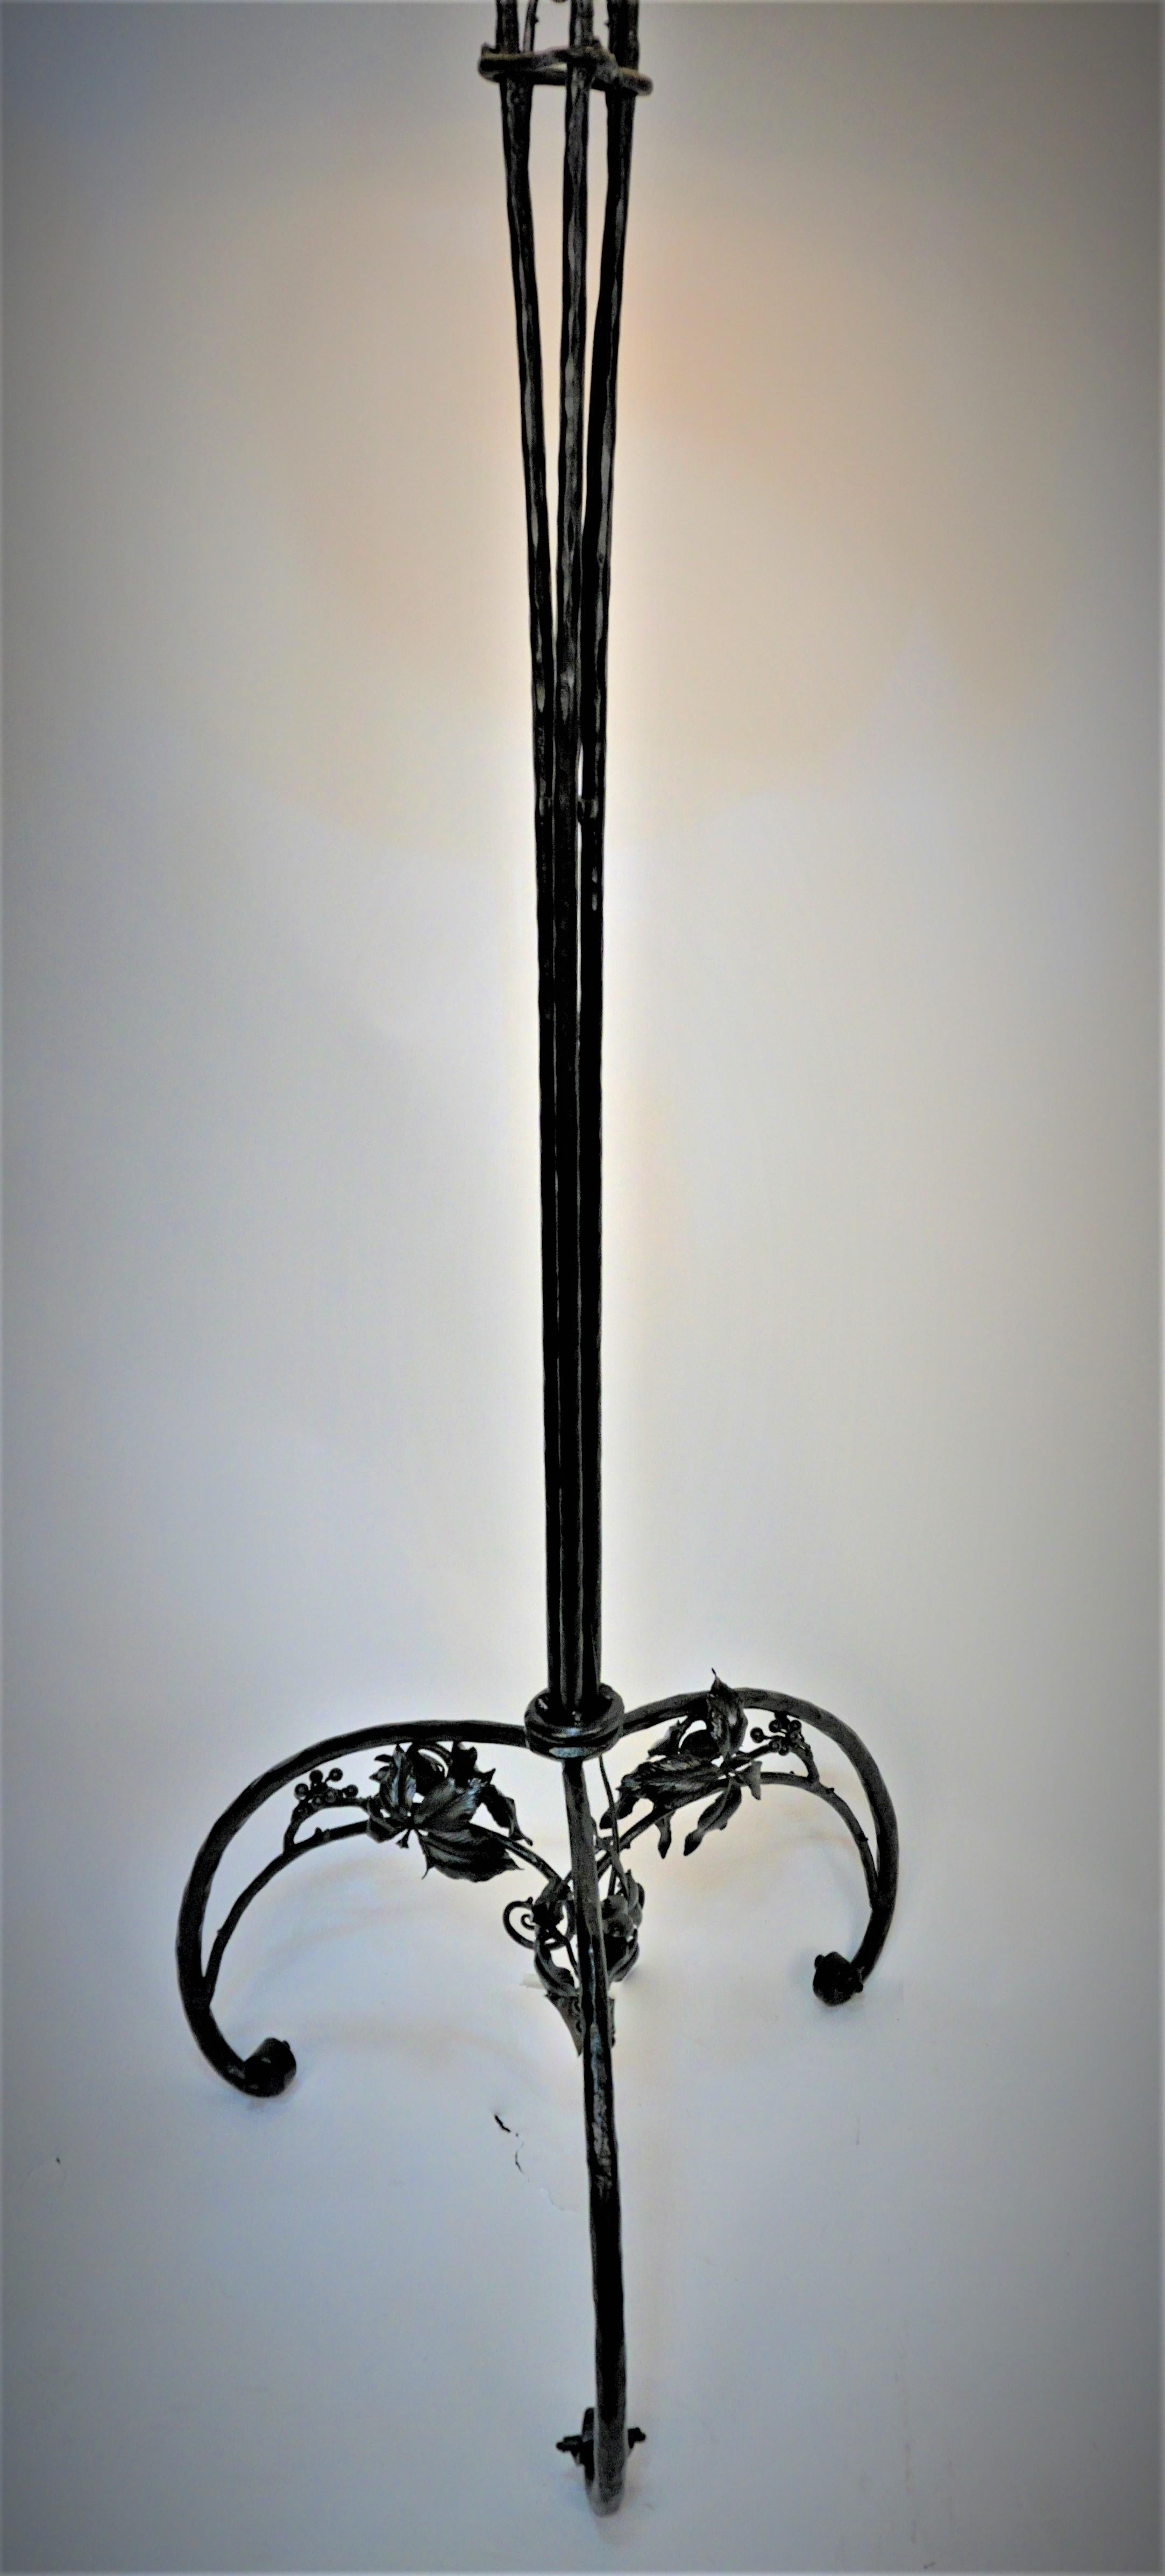 Elegant lampadaire en fer forgé fabriqué à la main avec une finition laquée noire.
Modifié avec 2 douilles à chaîne et équipé d'un abat-jour fait sur mesure.  

